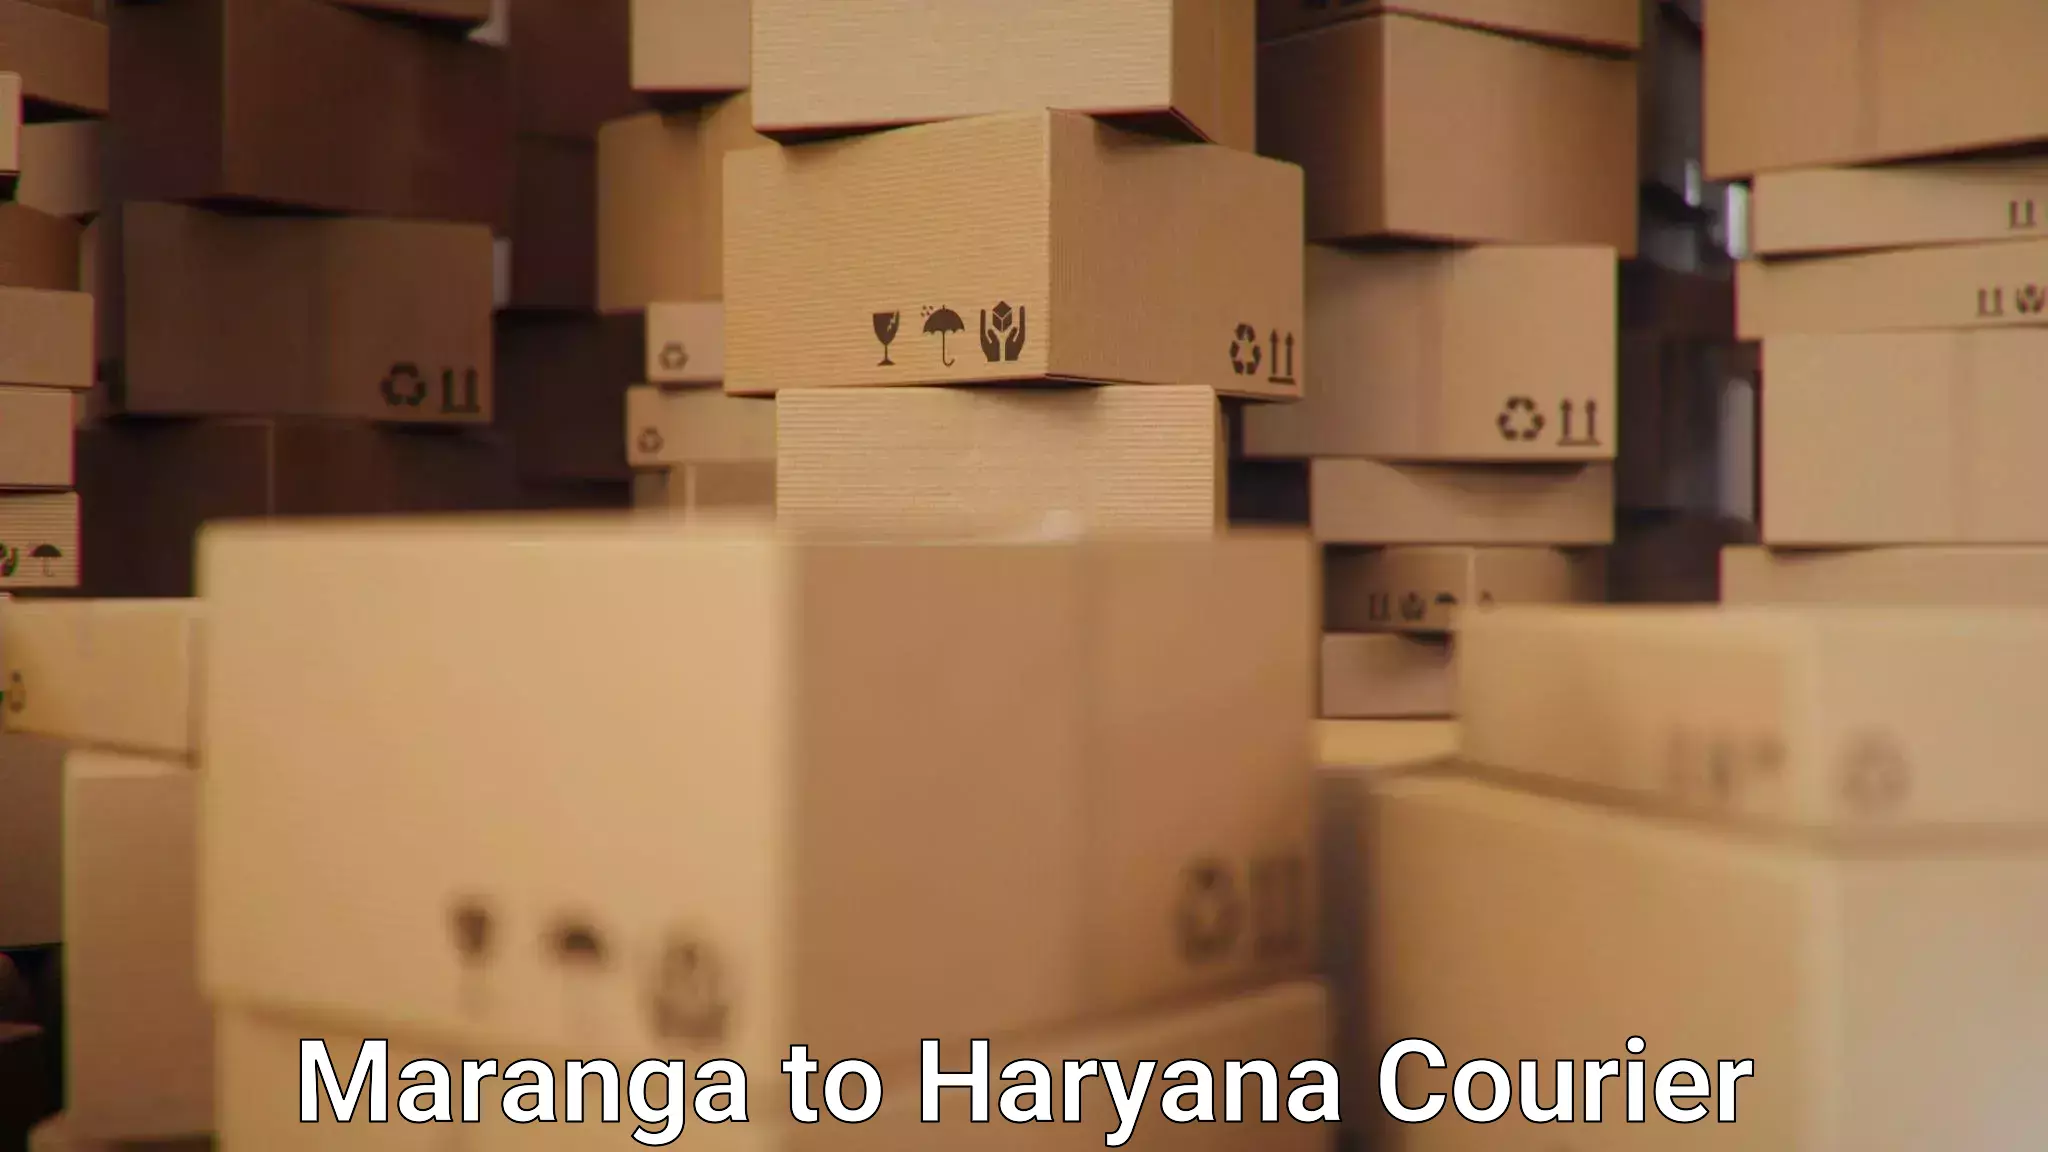 24-hour courier service Maranga to Haryana